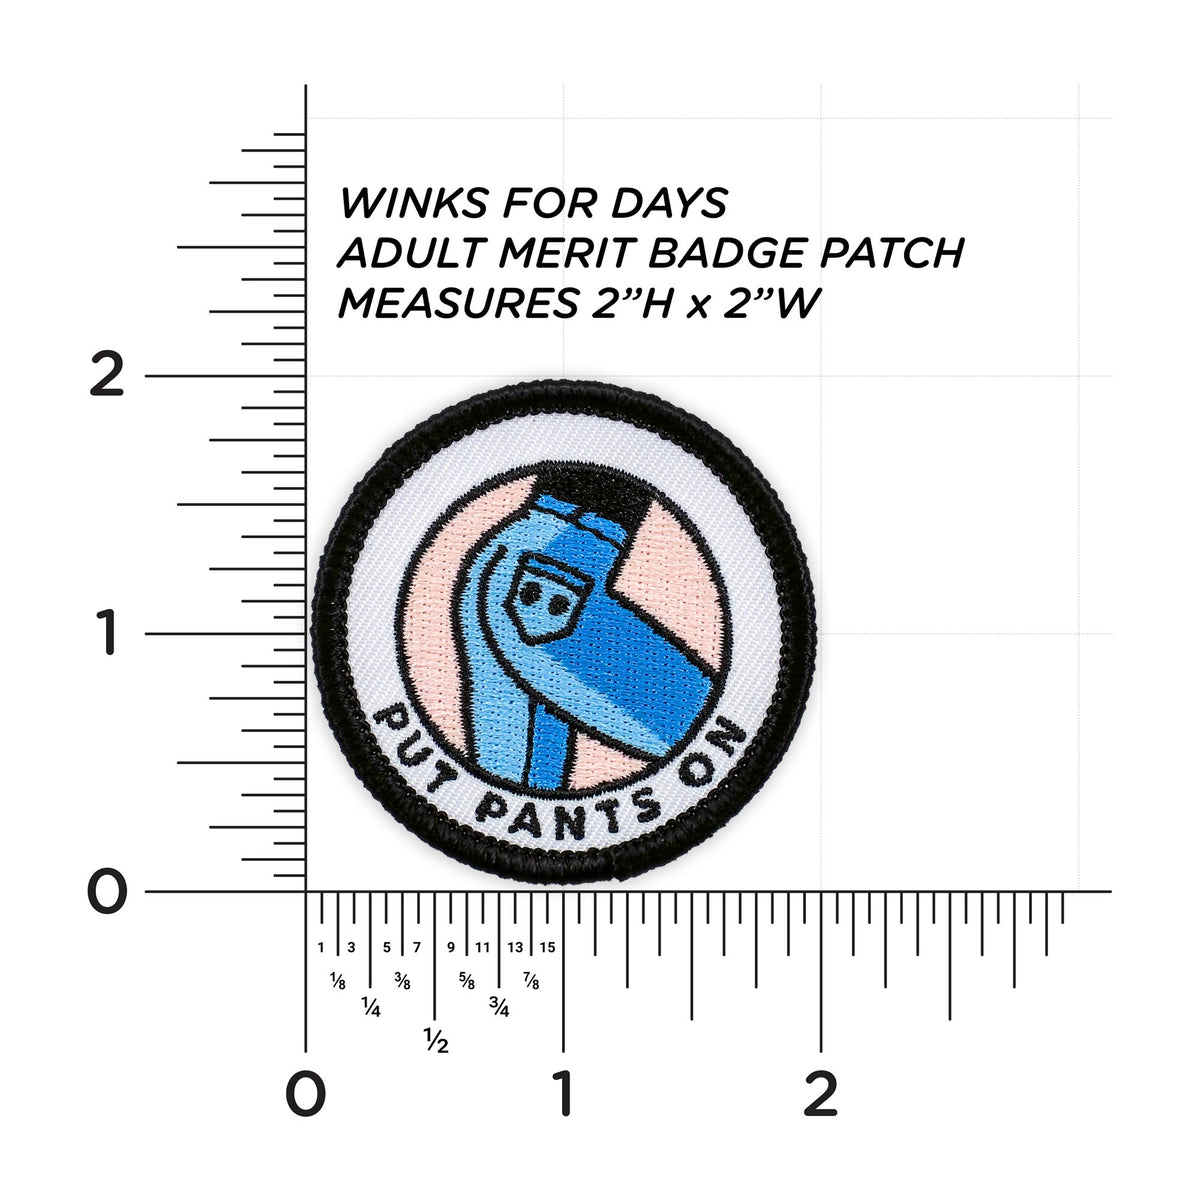 Put Pants On patch measurements